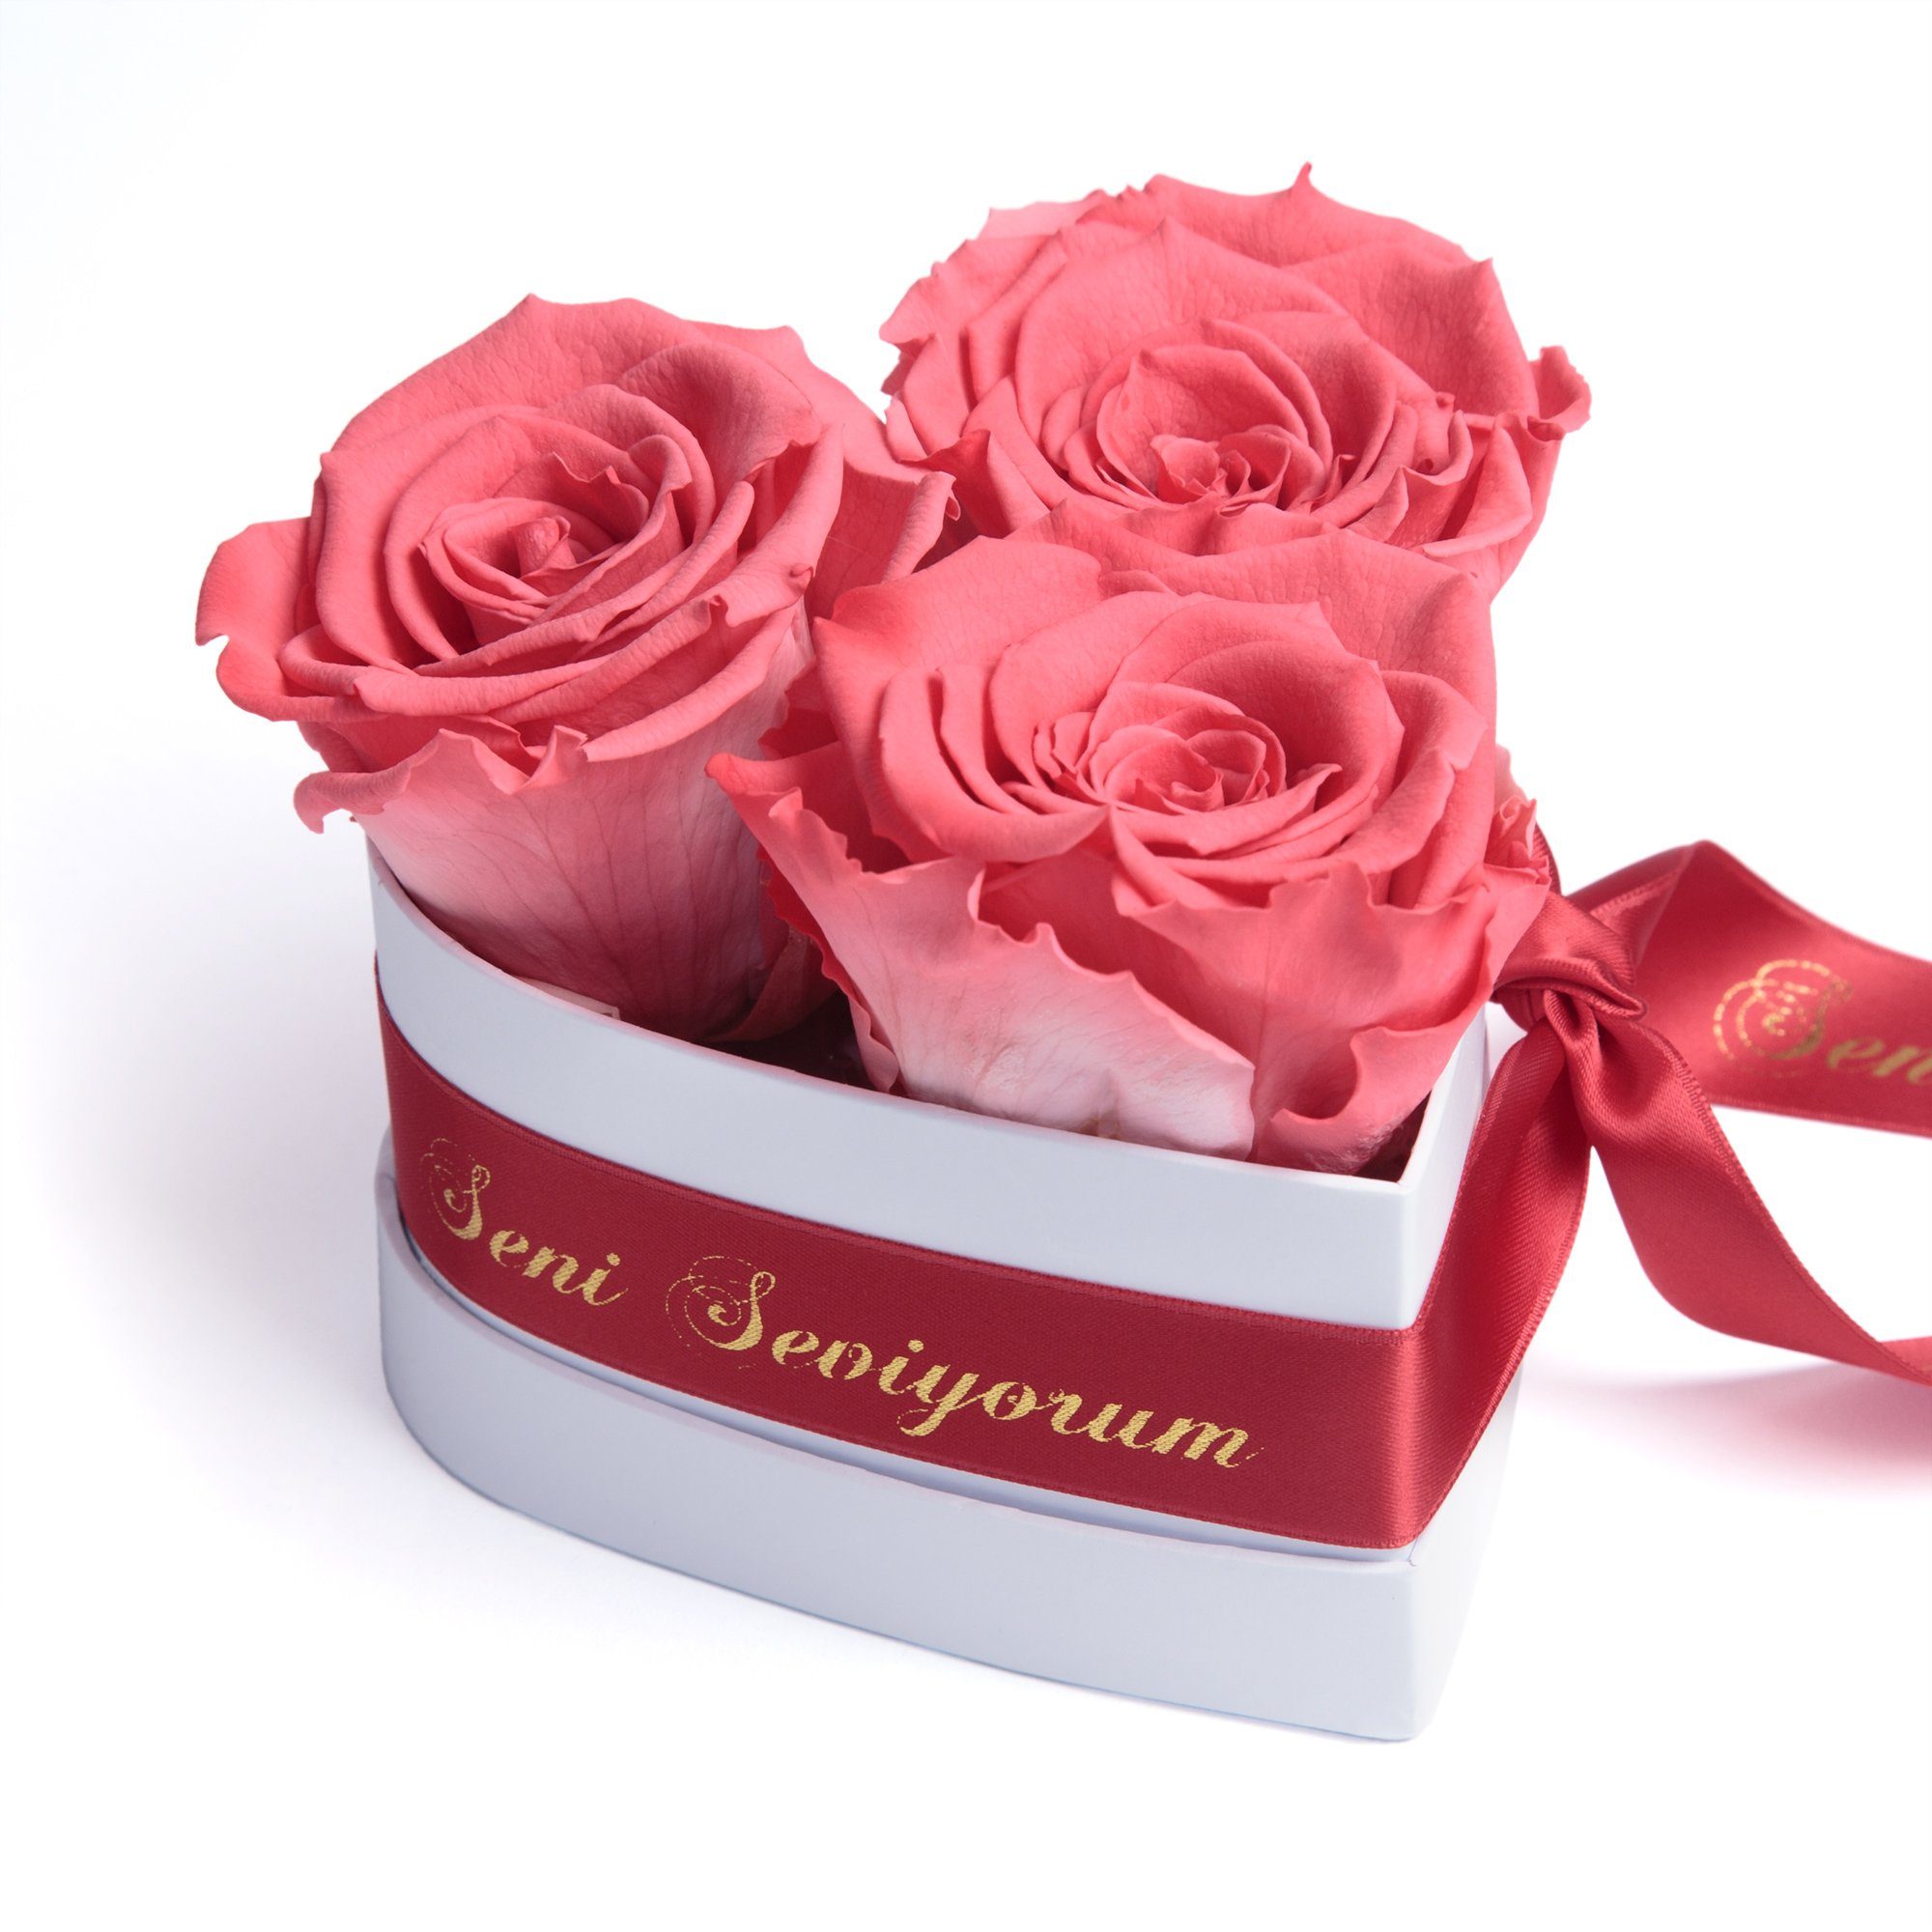 Kunstblume Seni Seviyorum Infinity Rosenbox Herz 3 echte Rosen konserviert Rose, ROSEMARIE SCHULZ Heidelberg, Höhe 10 cm, echte Rosen lang haltbar Korall